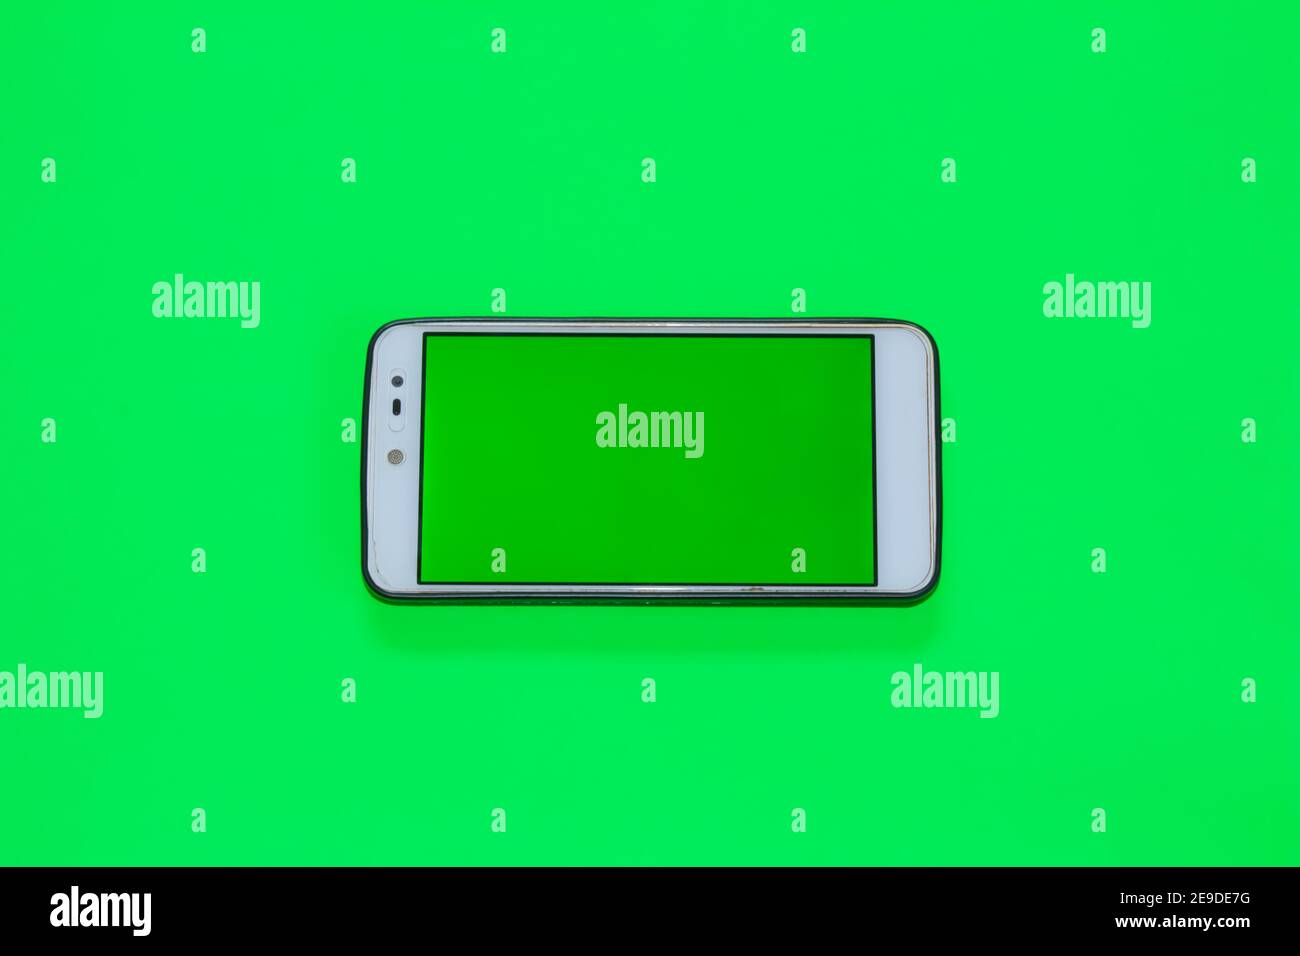 Chroma key green screen immagini e fotografie stock ad alta risoluzione -  Alamy